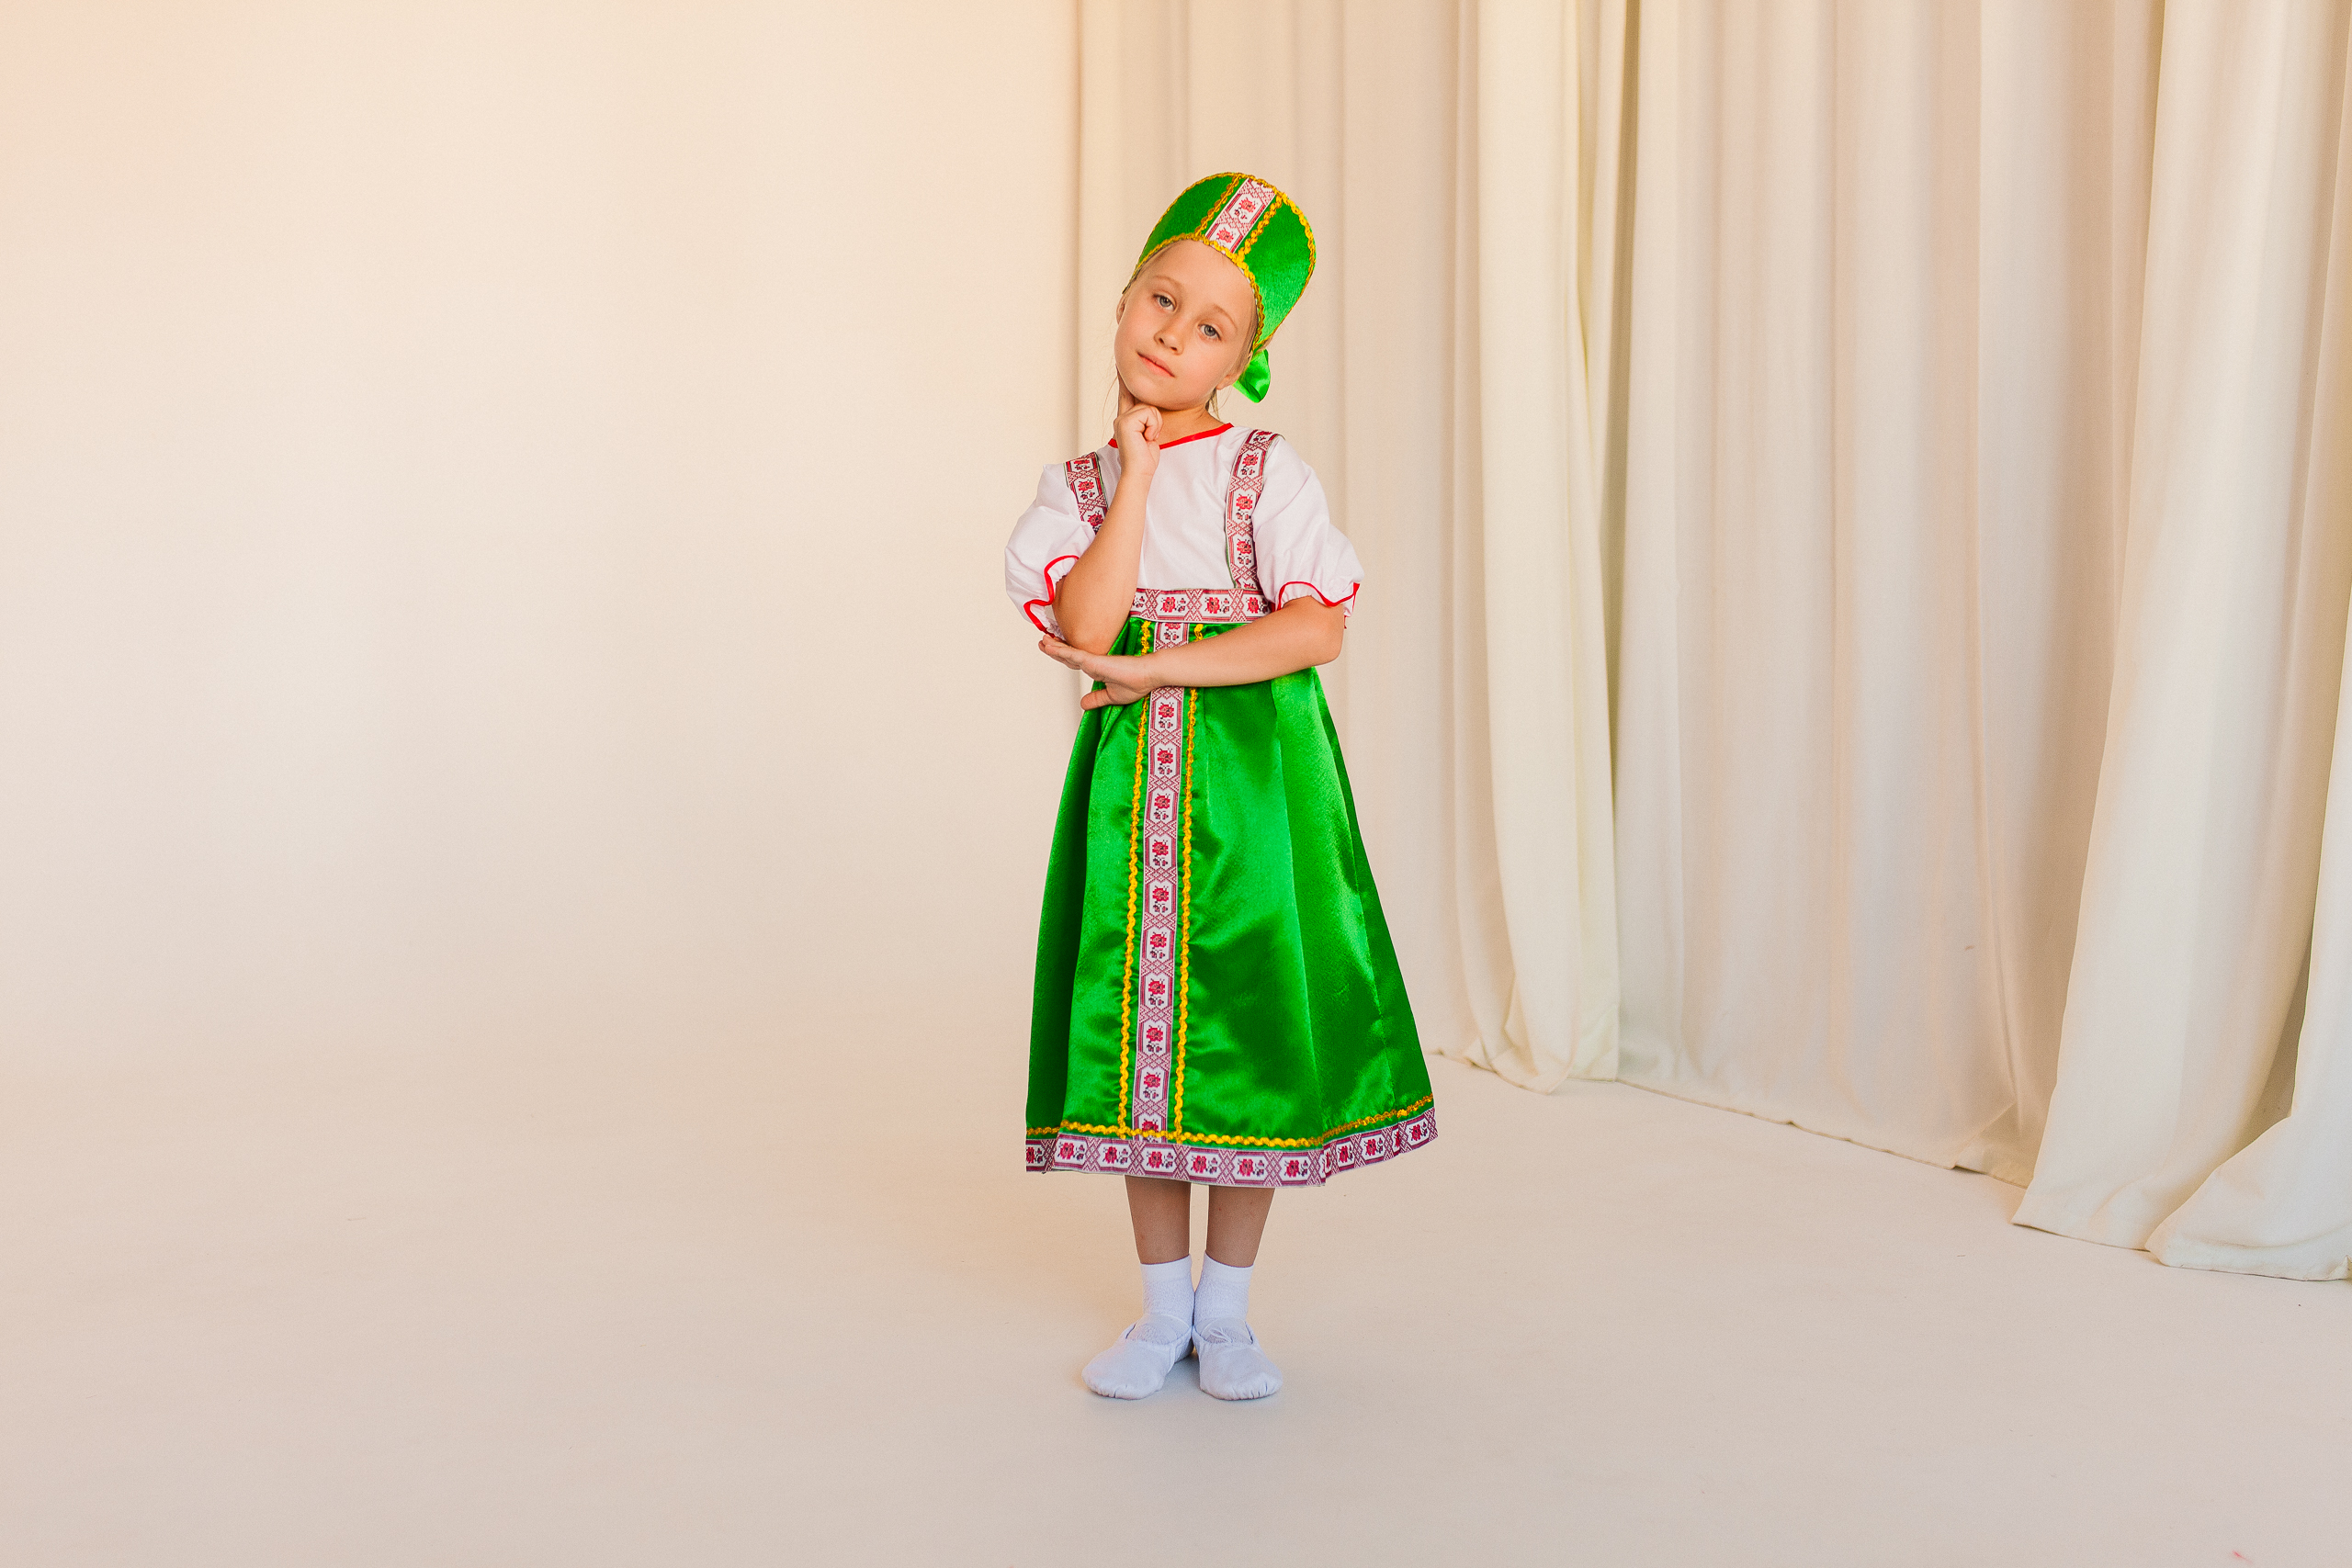 Русский народный костюм (девочка)